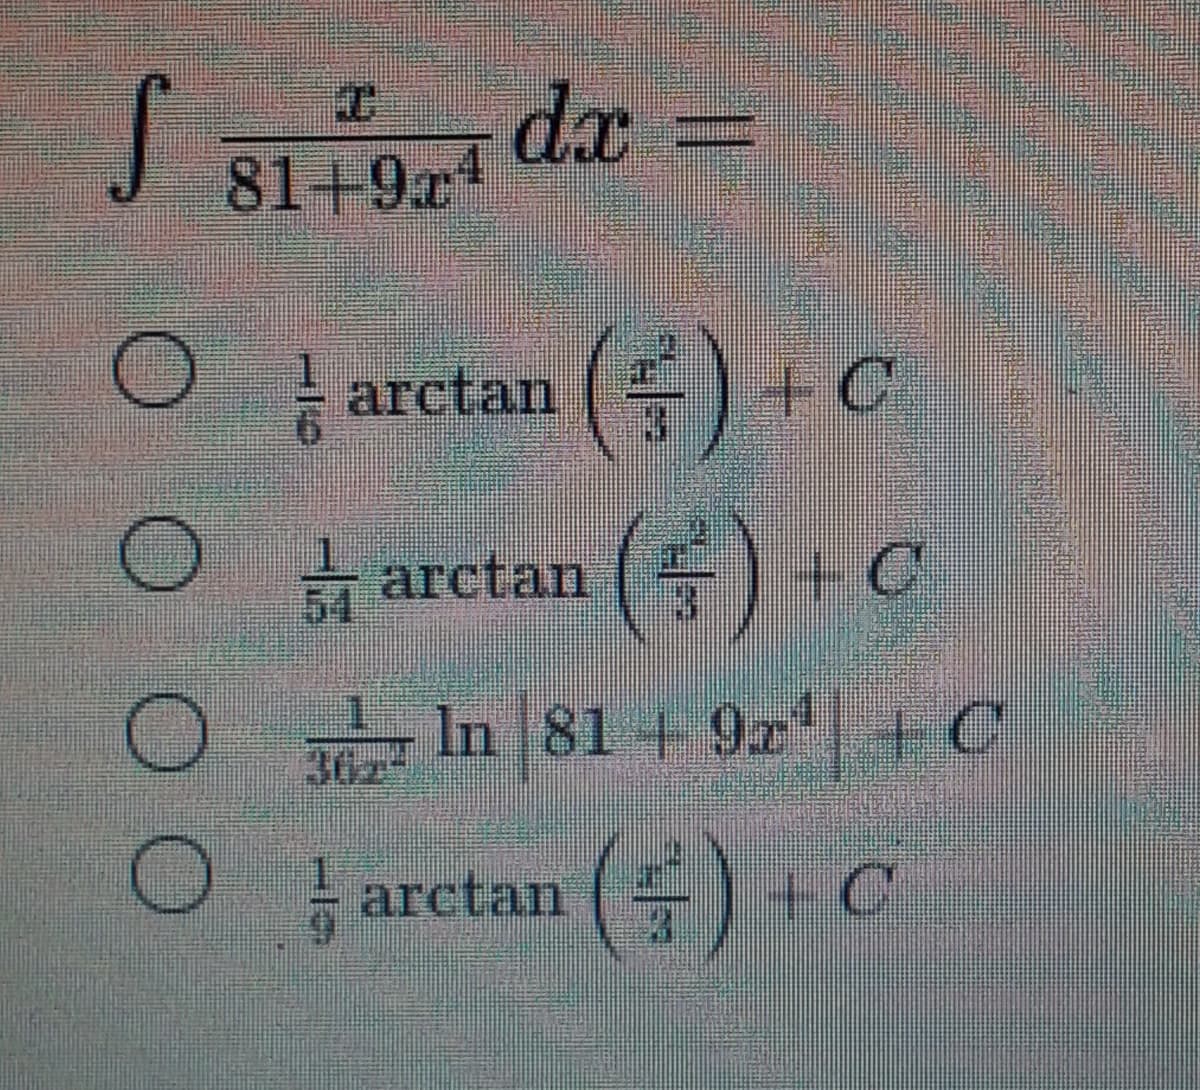 dx
81+9r4
-
arctan () + C
O
arctan ( )+C
O In 81 + 9x + C
arctan
+C
